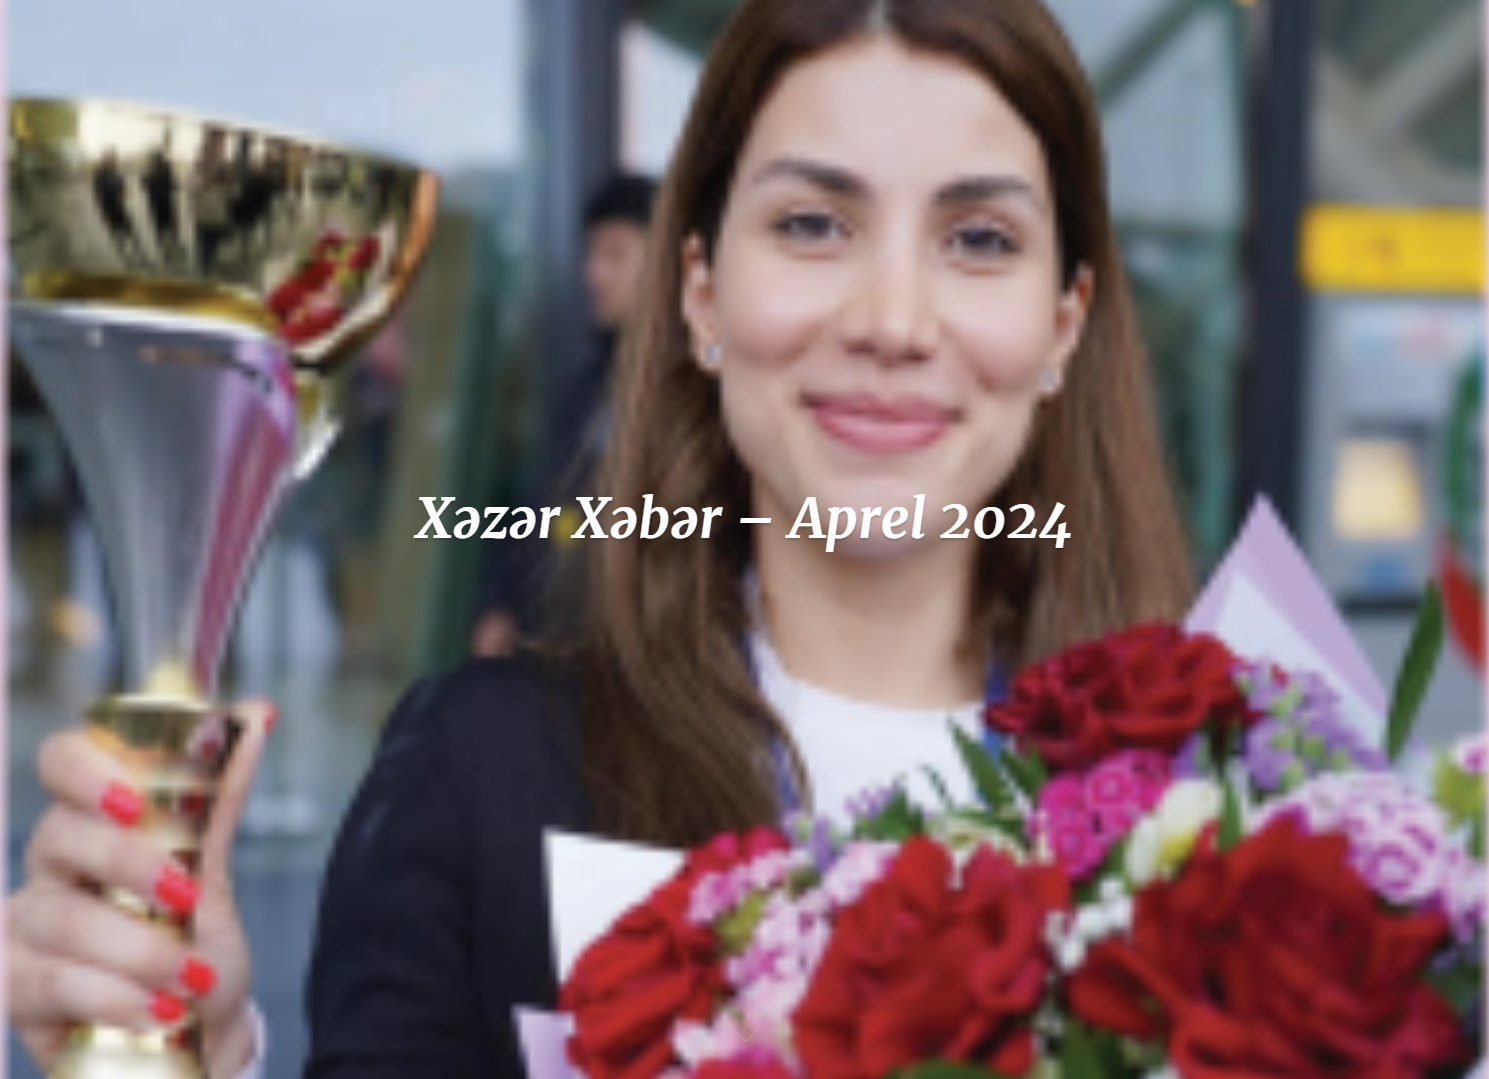 April Issue of “Khazar Khabar” on khazar-review.khazar.org